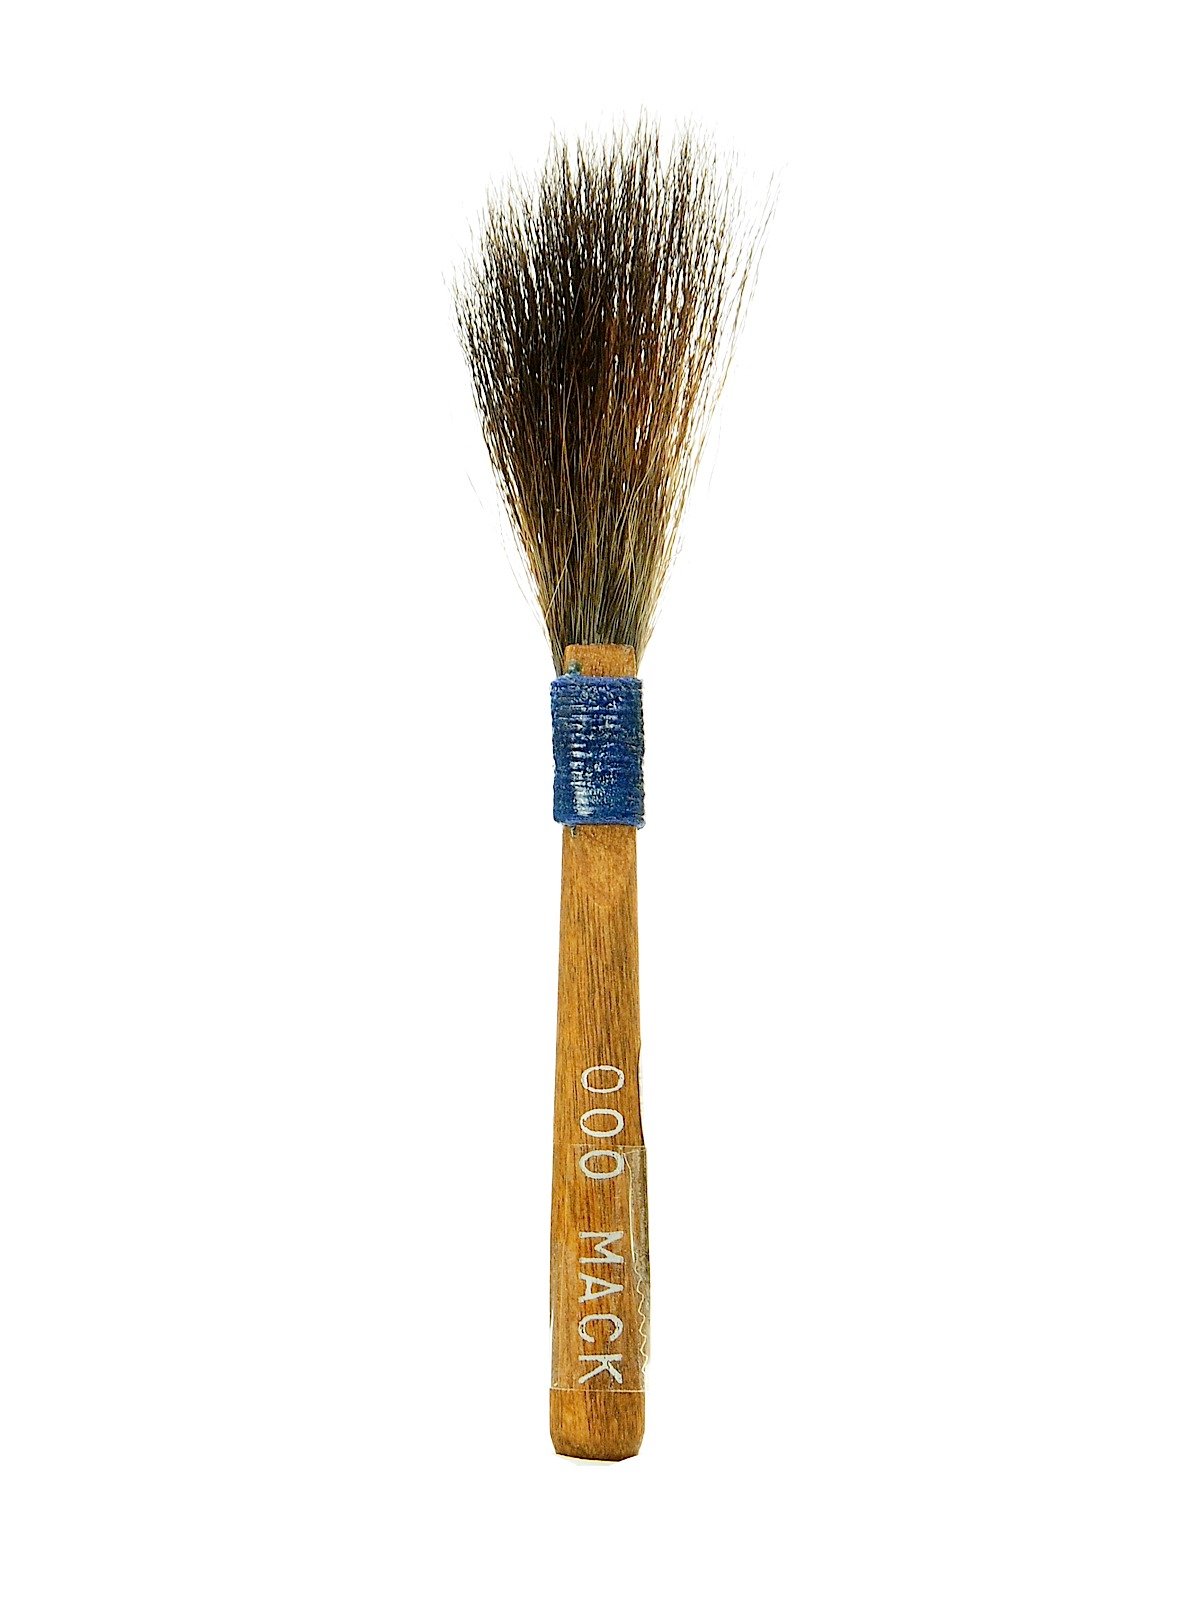 000 Pinstriping Brush - Series 10, Andrew Mack & Son Brush Company